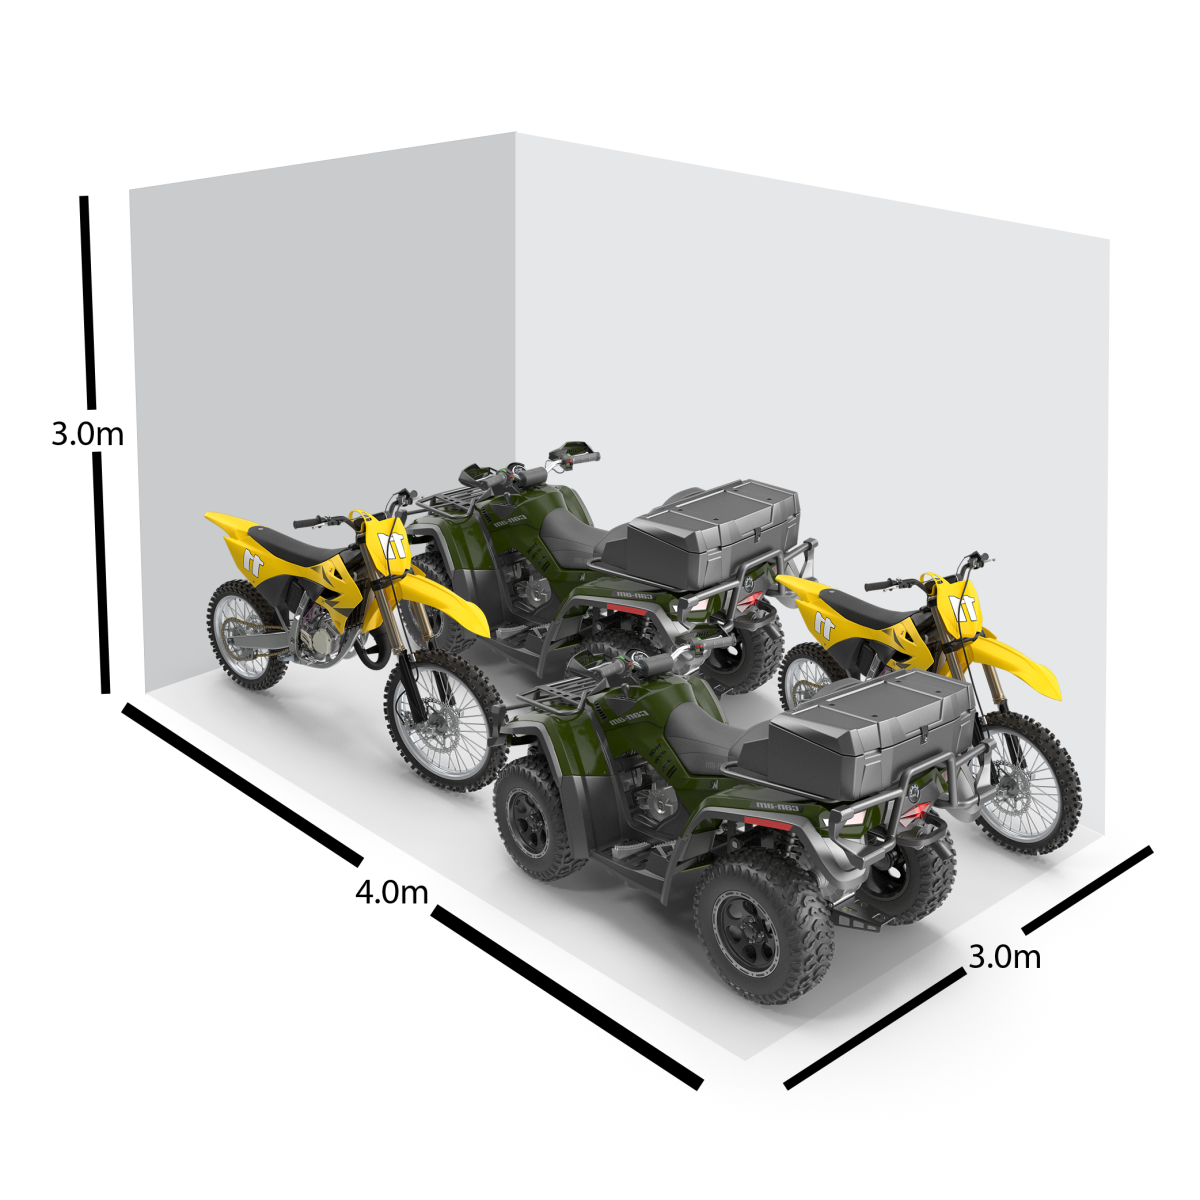 motorbikes and quadbikes